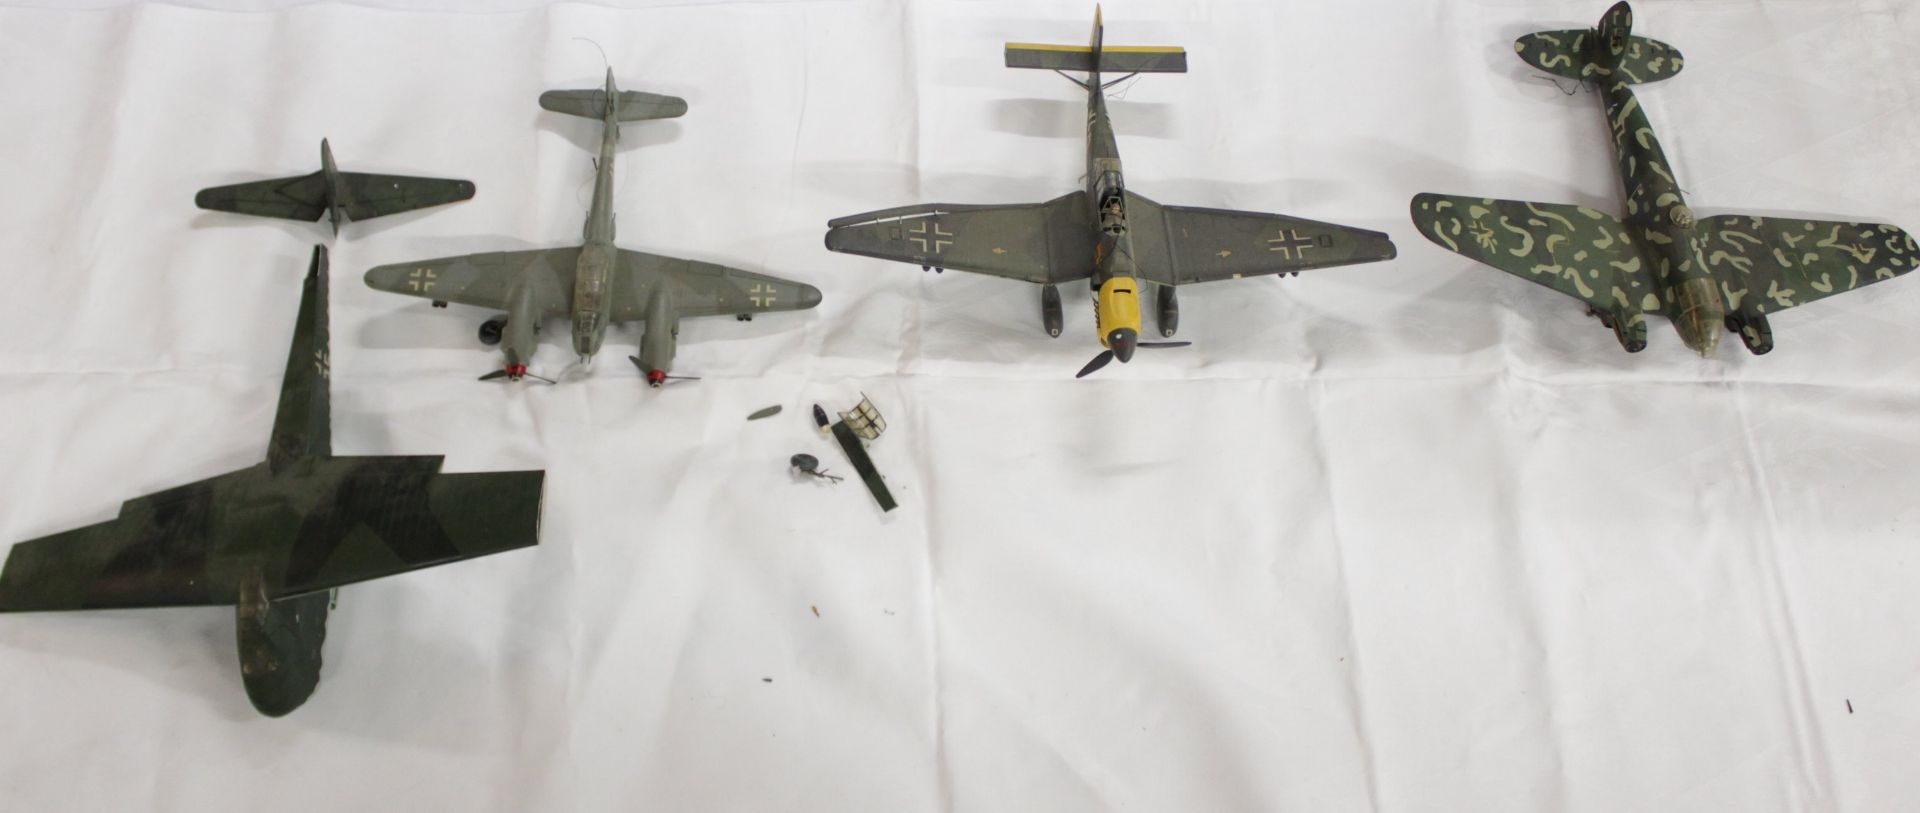 Konvolut div. Modell-Flugzeuge, meist mit Beschädigung (Teile lose, abgebrochen etc.), Vollständigk - Image 12 of 15